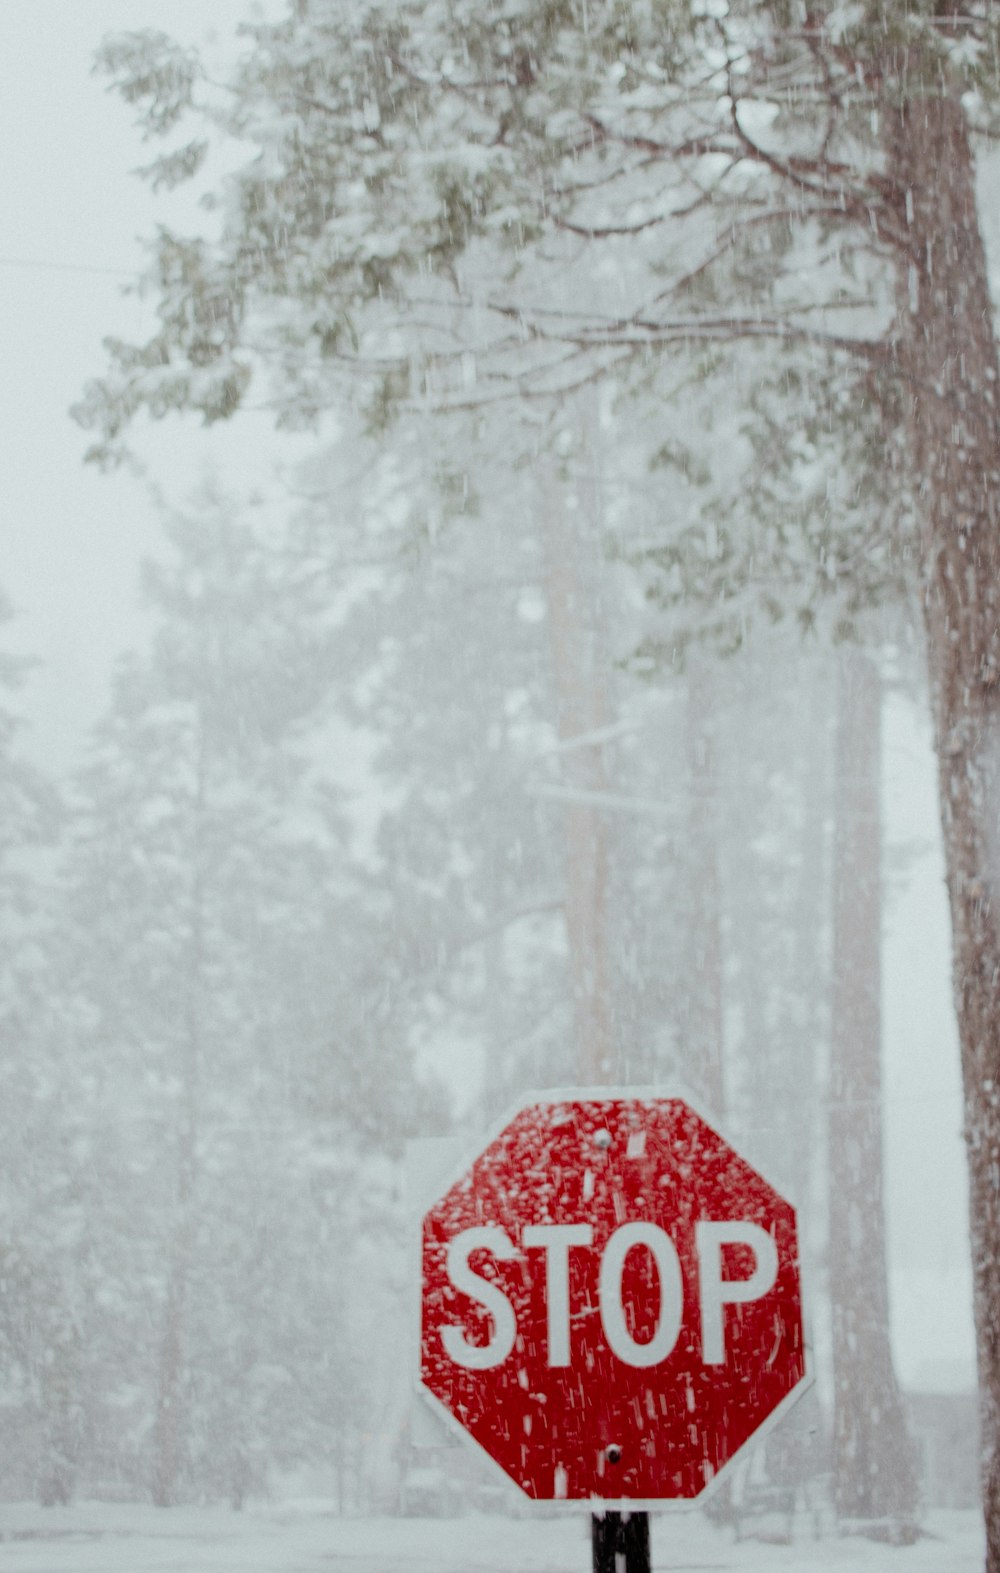 ein rotes Stoppschild mitten in einem verschneiten Wald